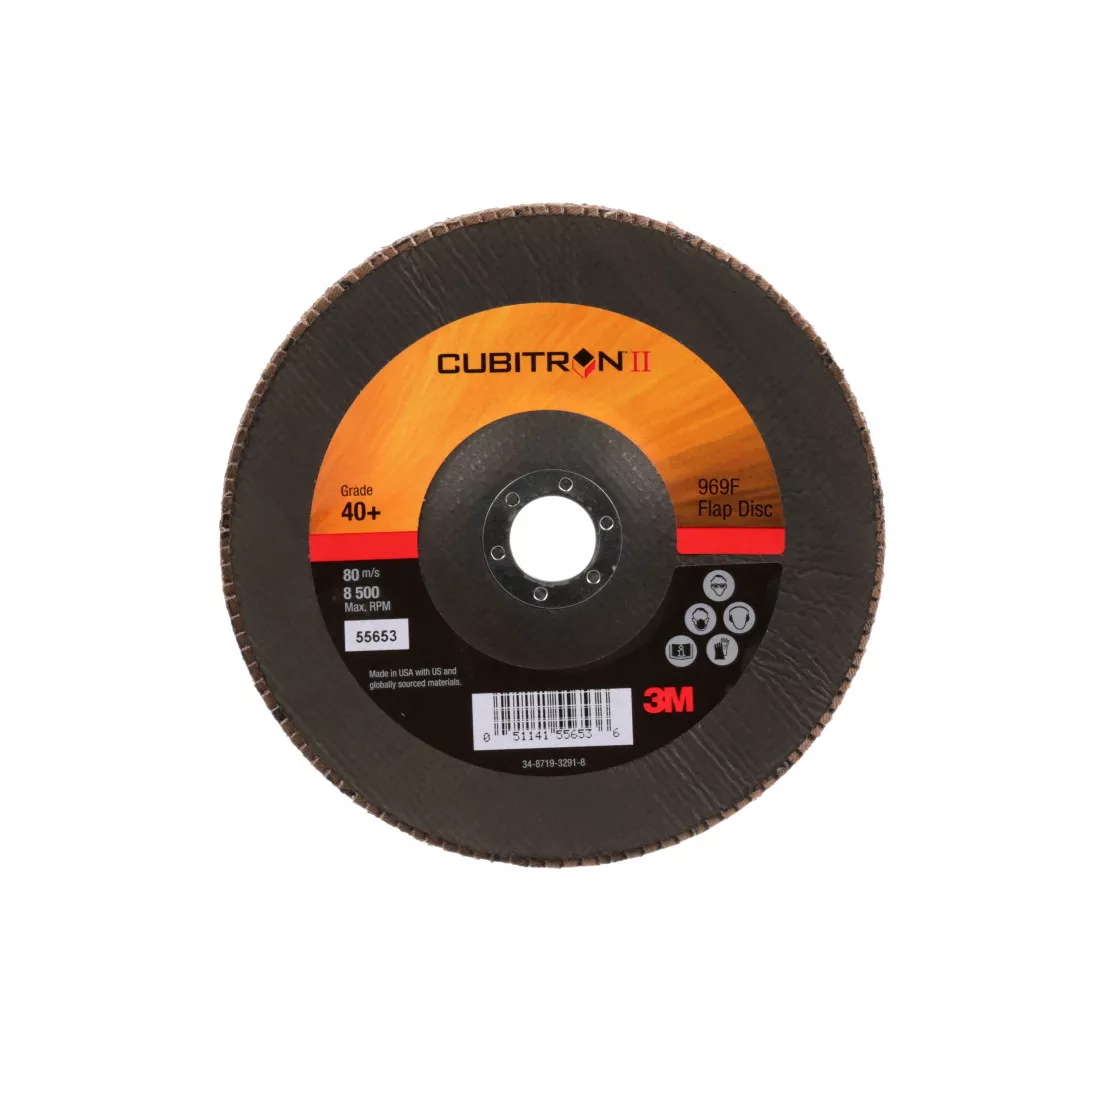 3M™ Cubitron™ II Flap Disc 967A, 40+, T29, 7 in x 7/8 in, Giant, 5
ea/Case